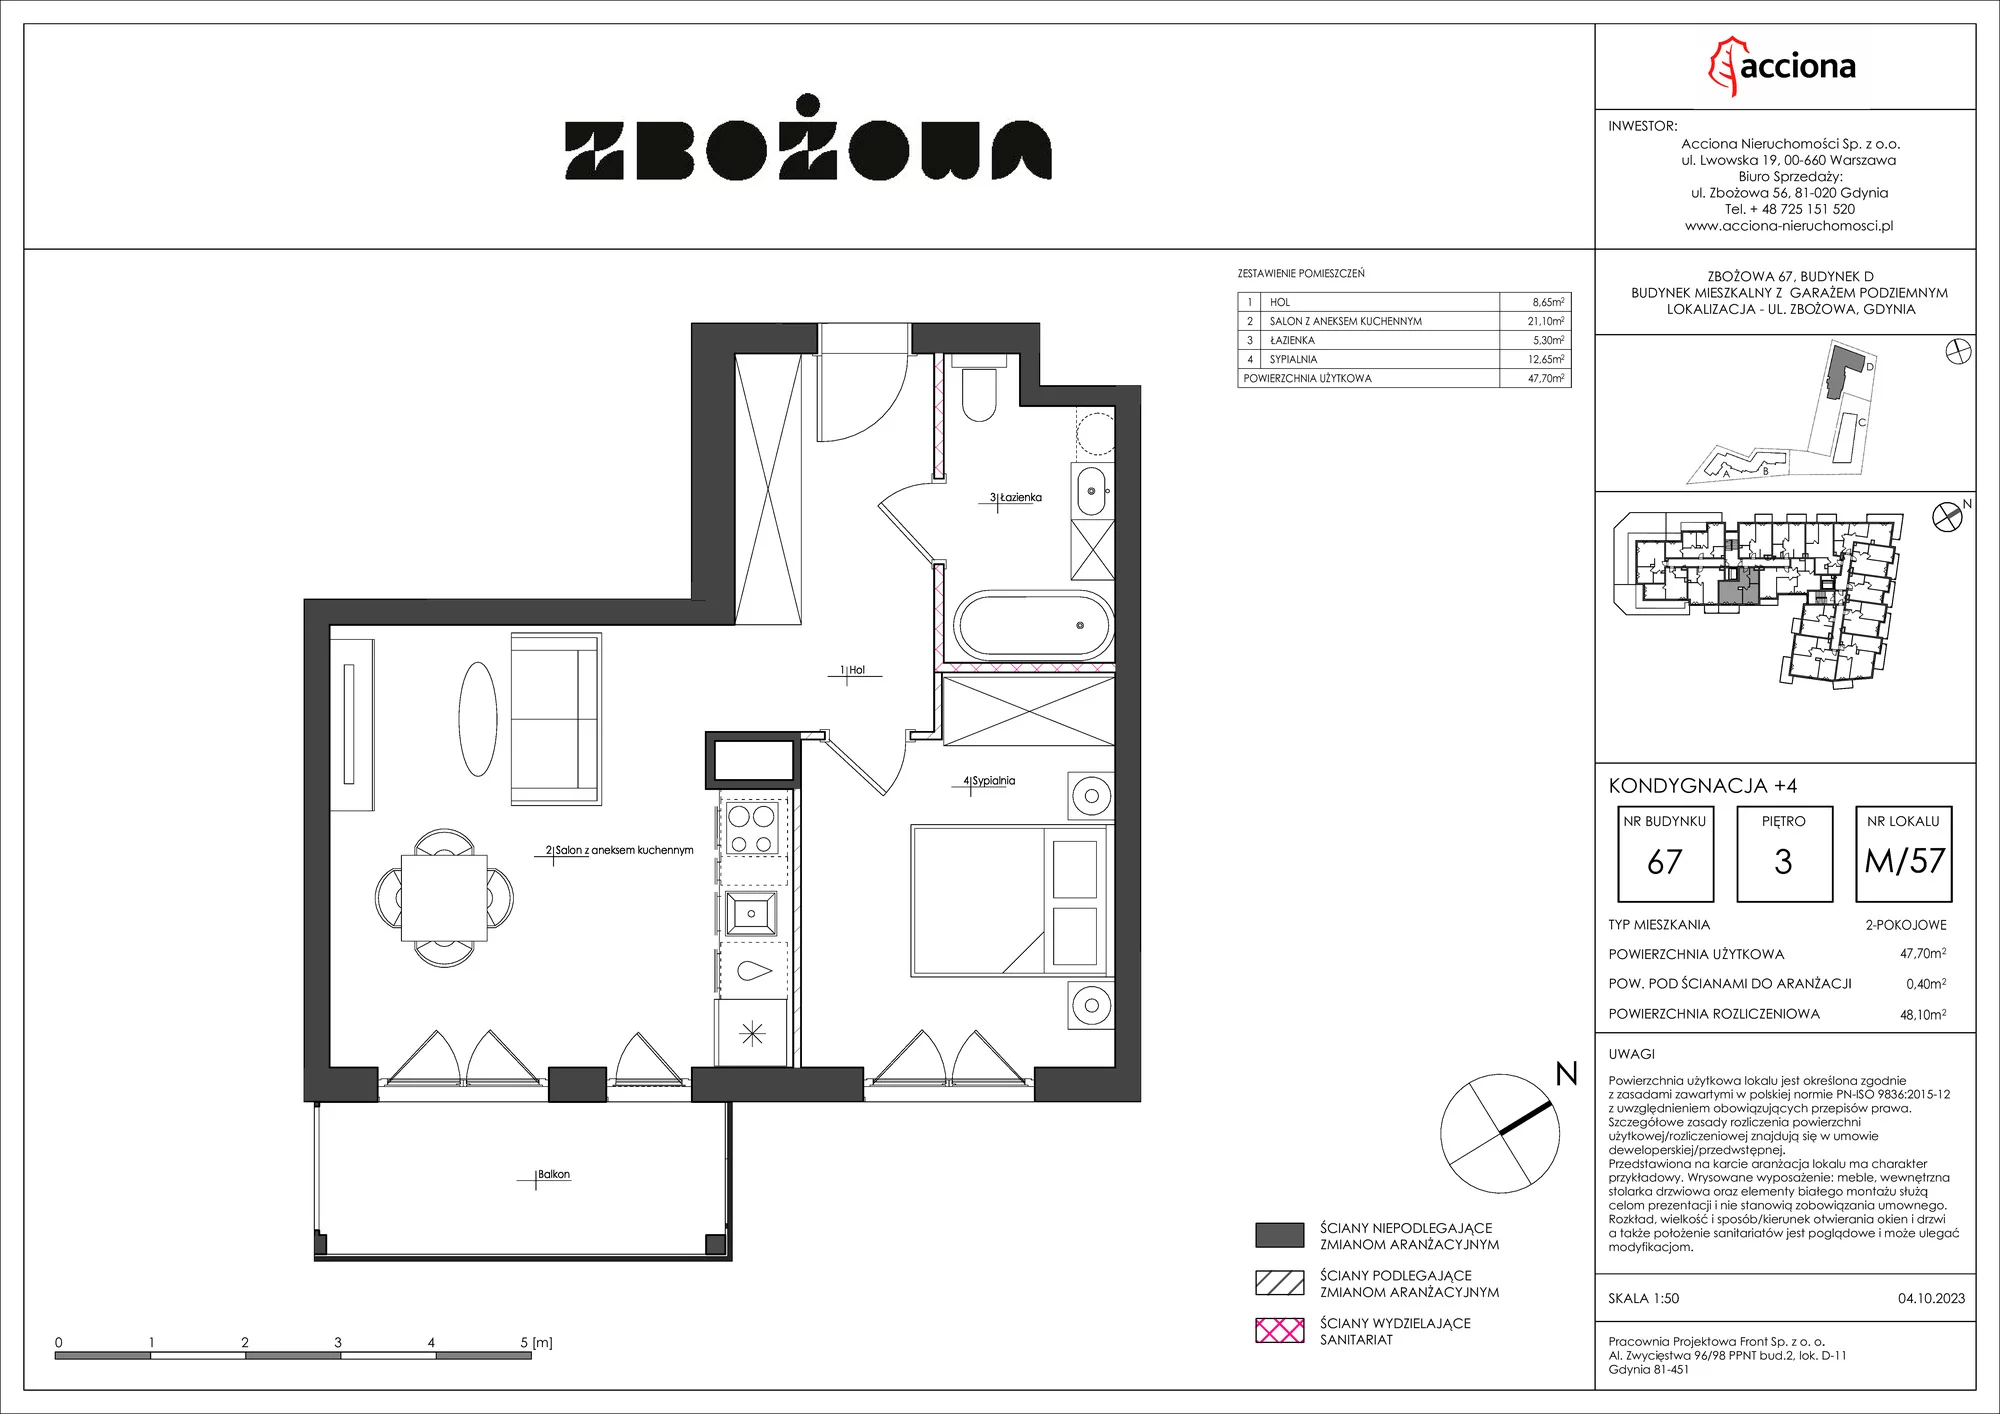 Mieszkanie 48,10 m², piętro 3, oferta nr 67.57, Zbożowa, Gdynia, Cisowa, ul. Zbożowa